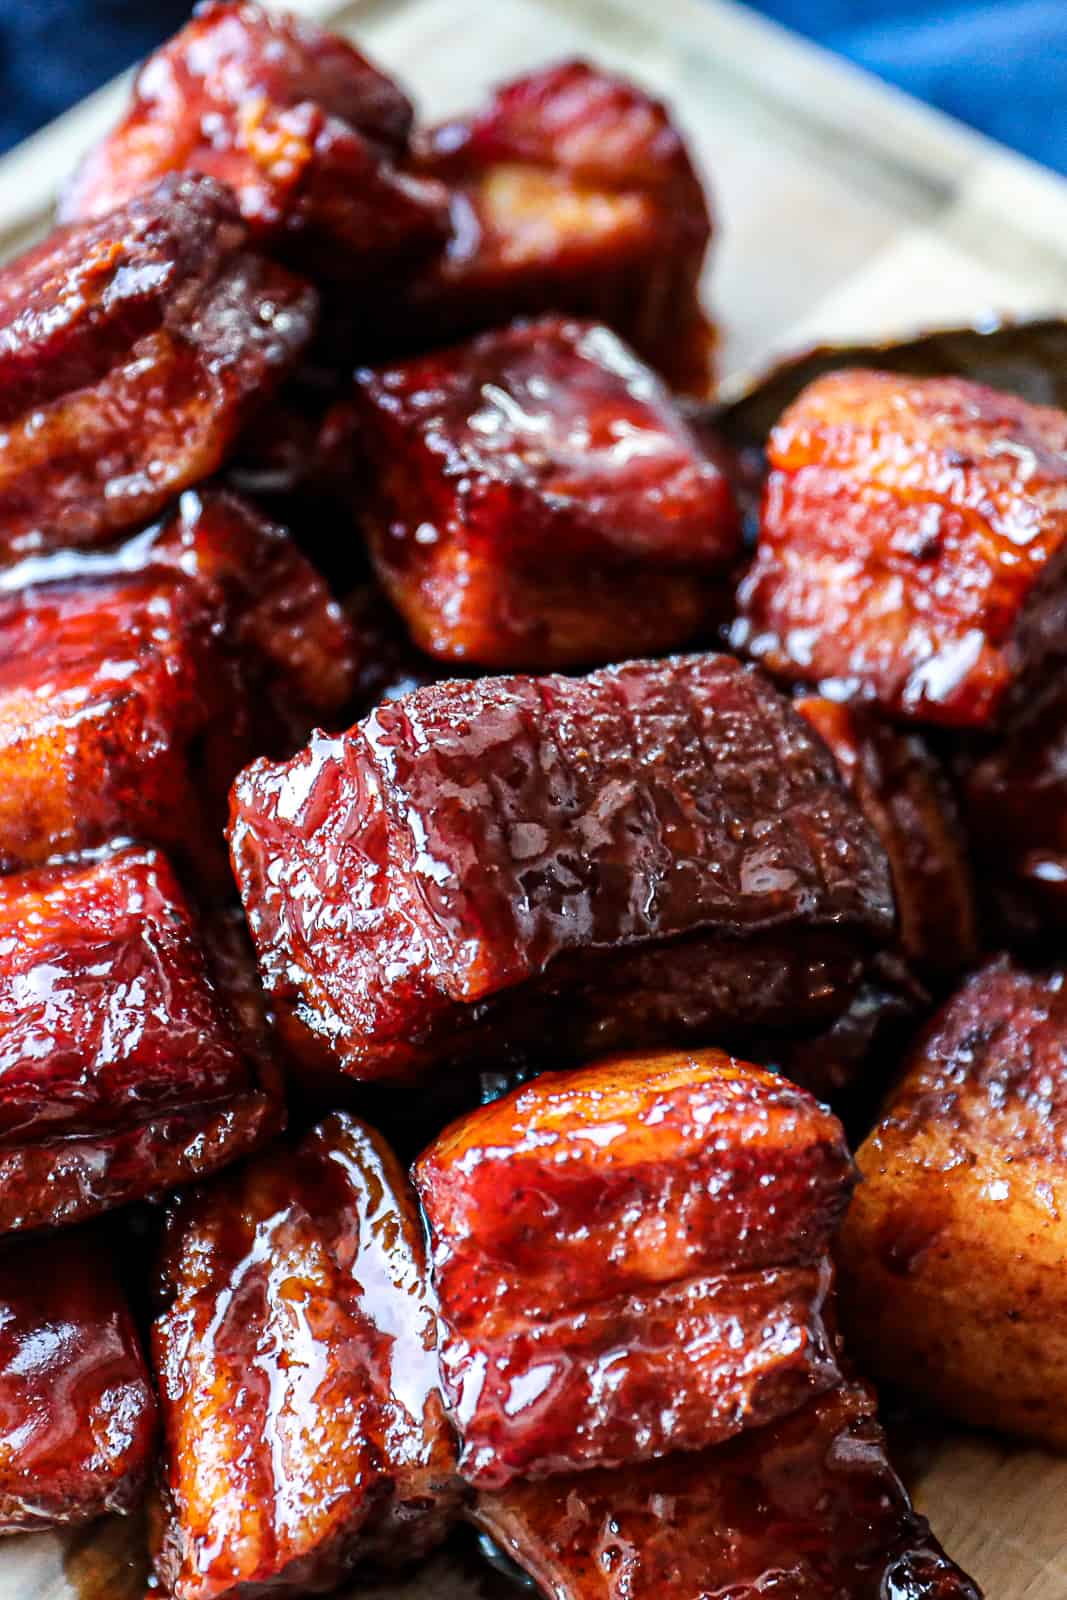 Pellet smoke flavored pork belly burnt ends with glaze